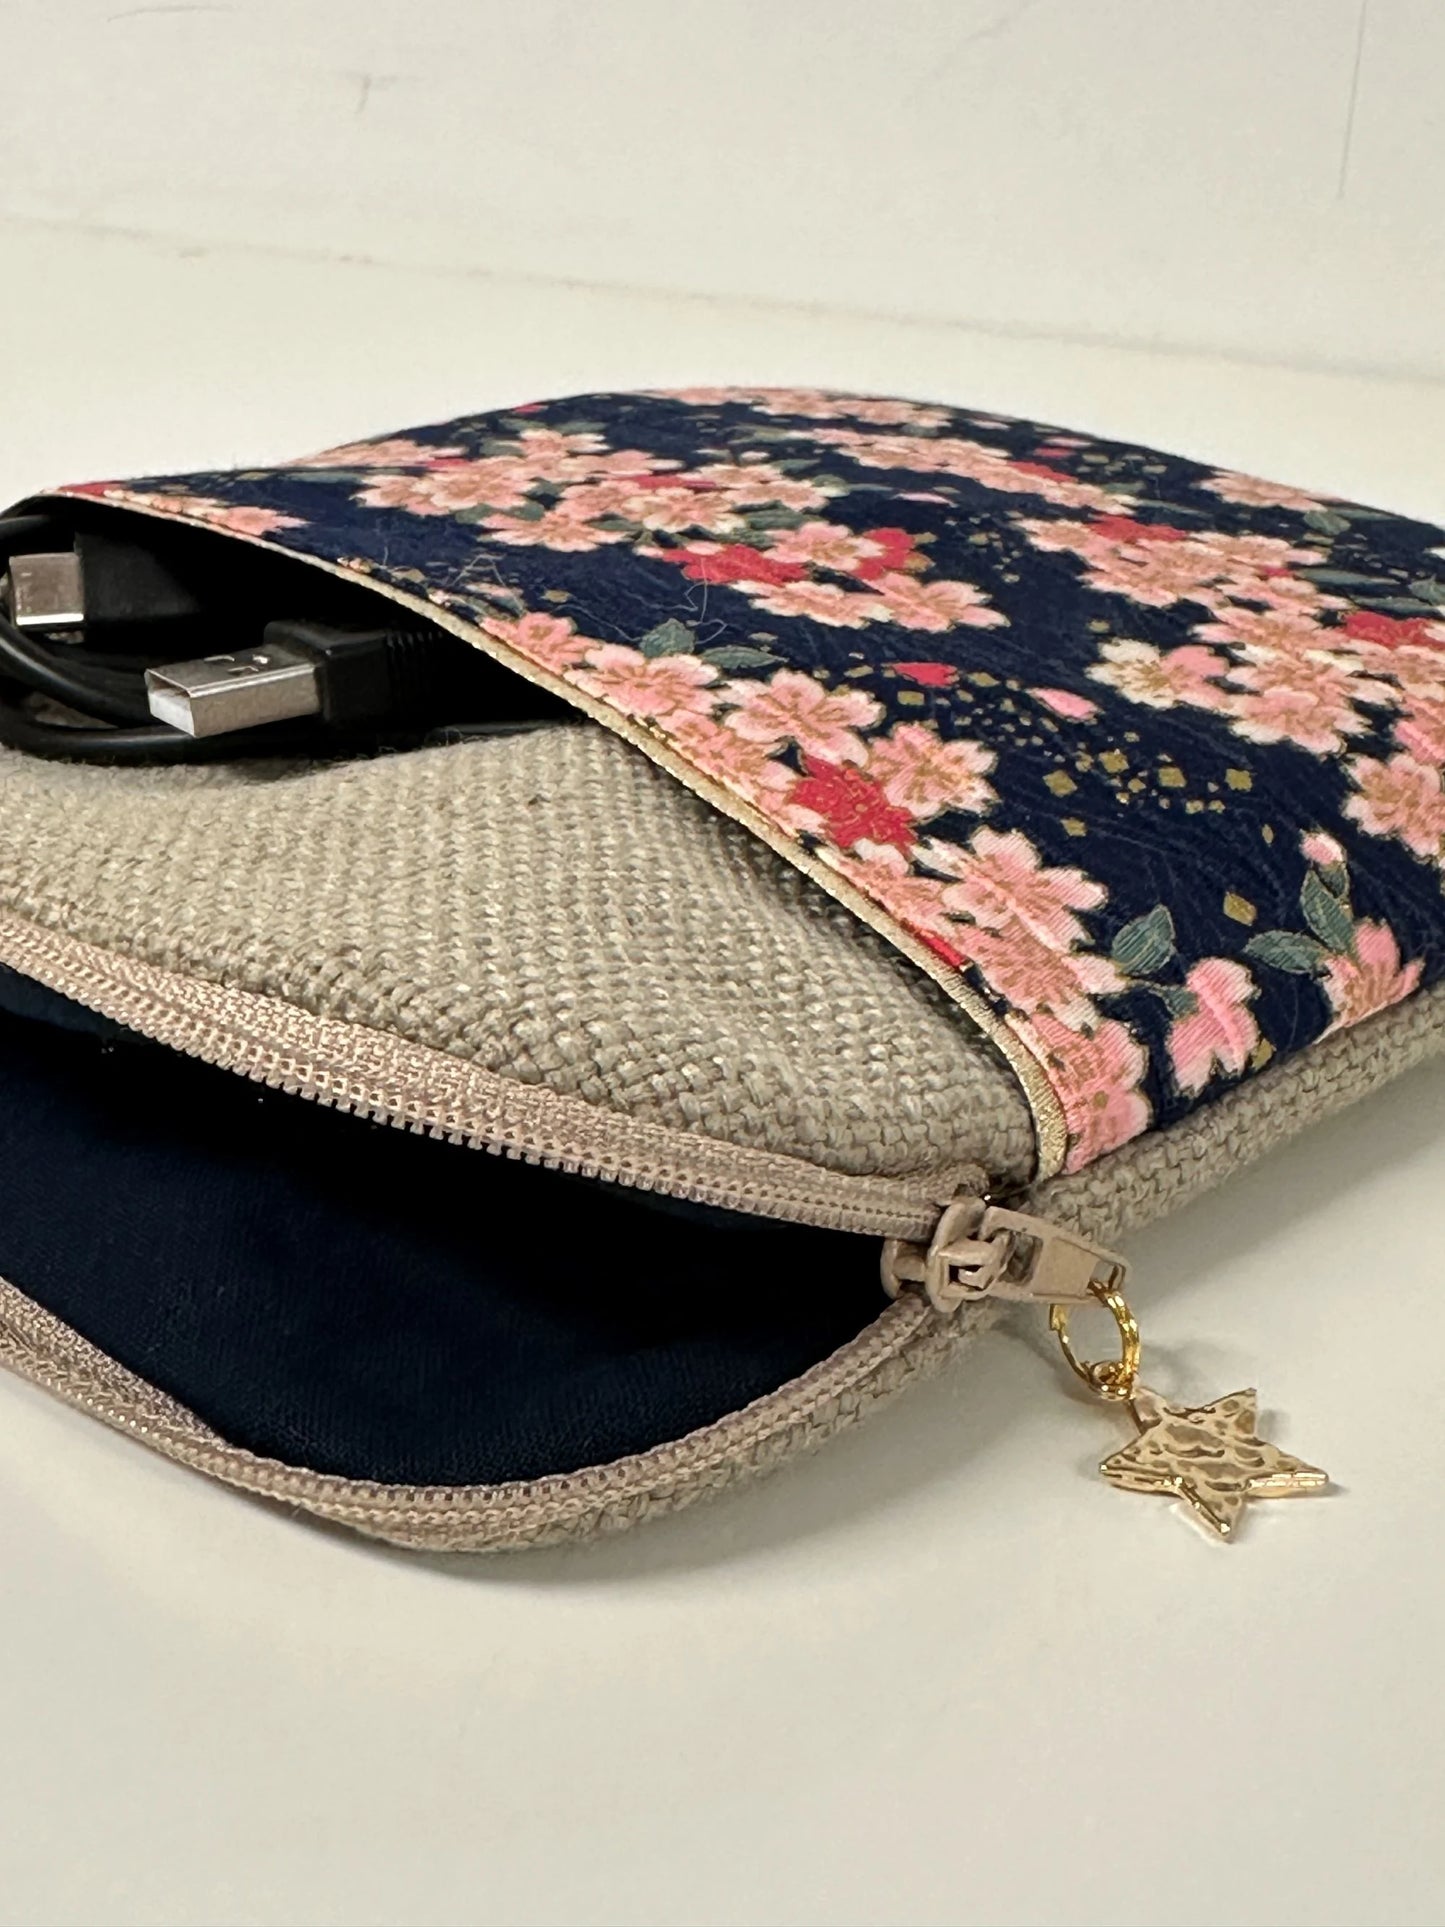 L'ouverture élargie de la pochette liseuse en lin et tissu japonais Sakura fleuri.